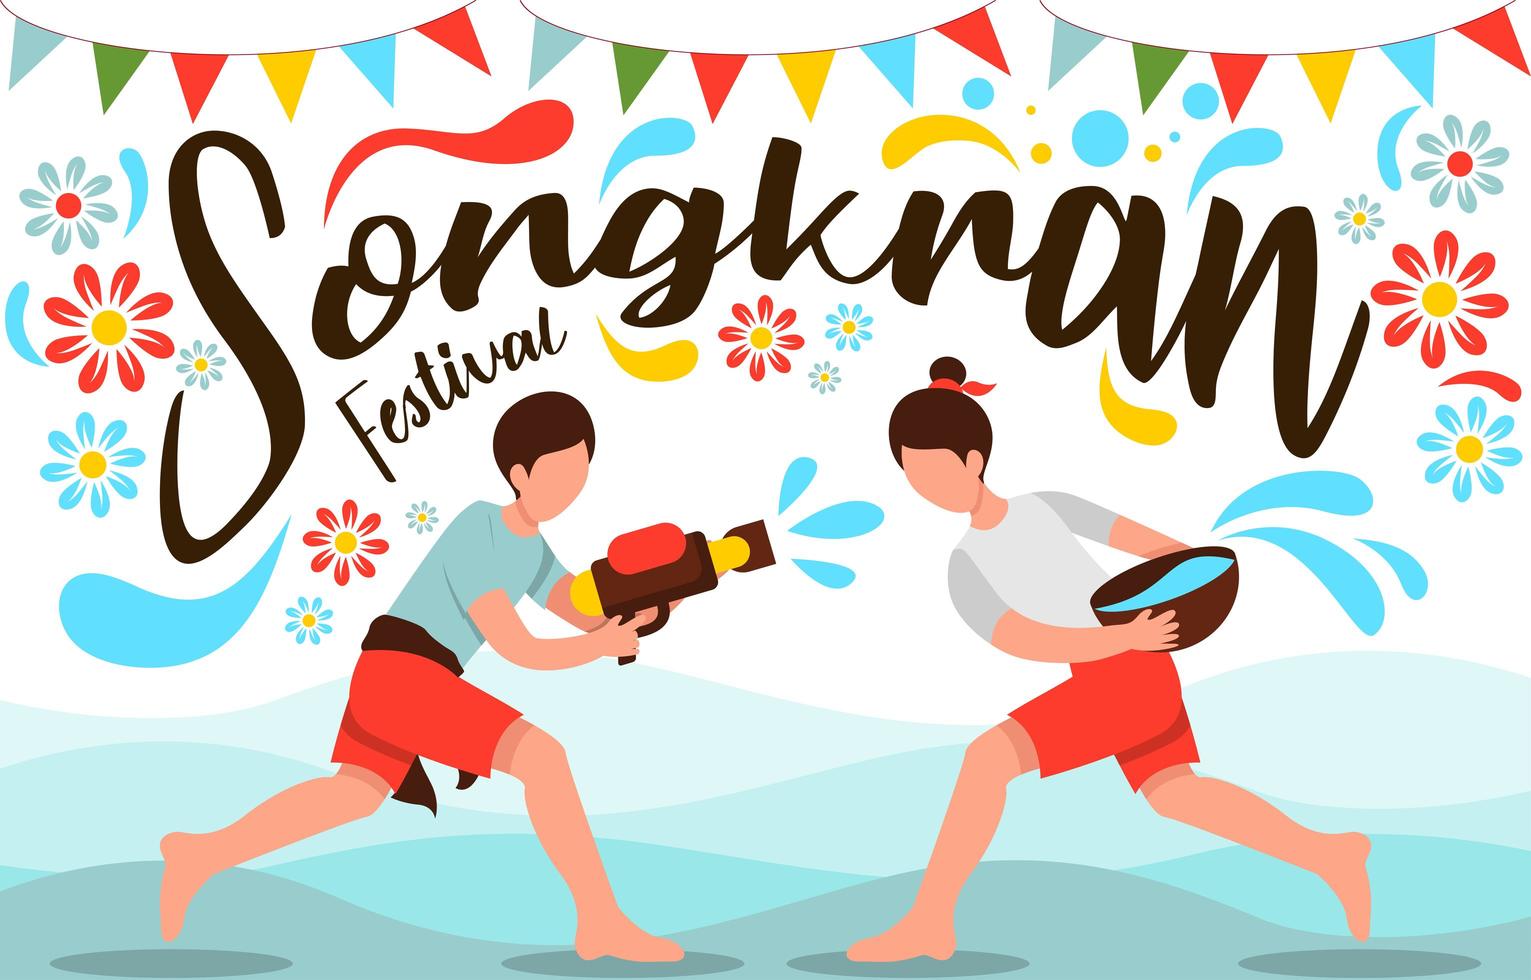 celebrando o festival da água Songkran vetor